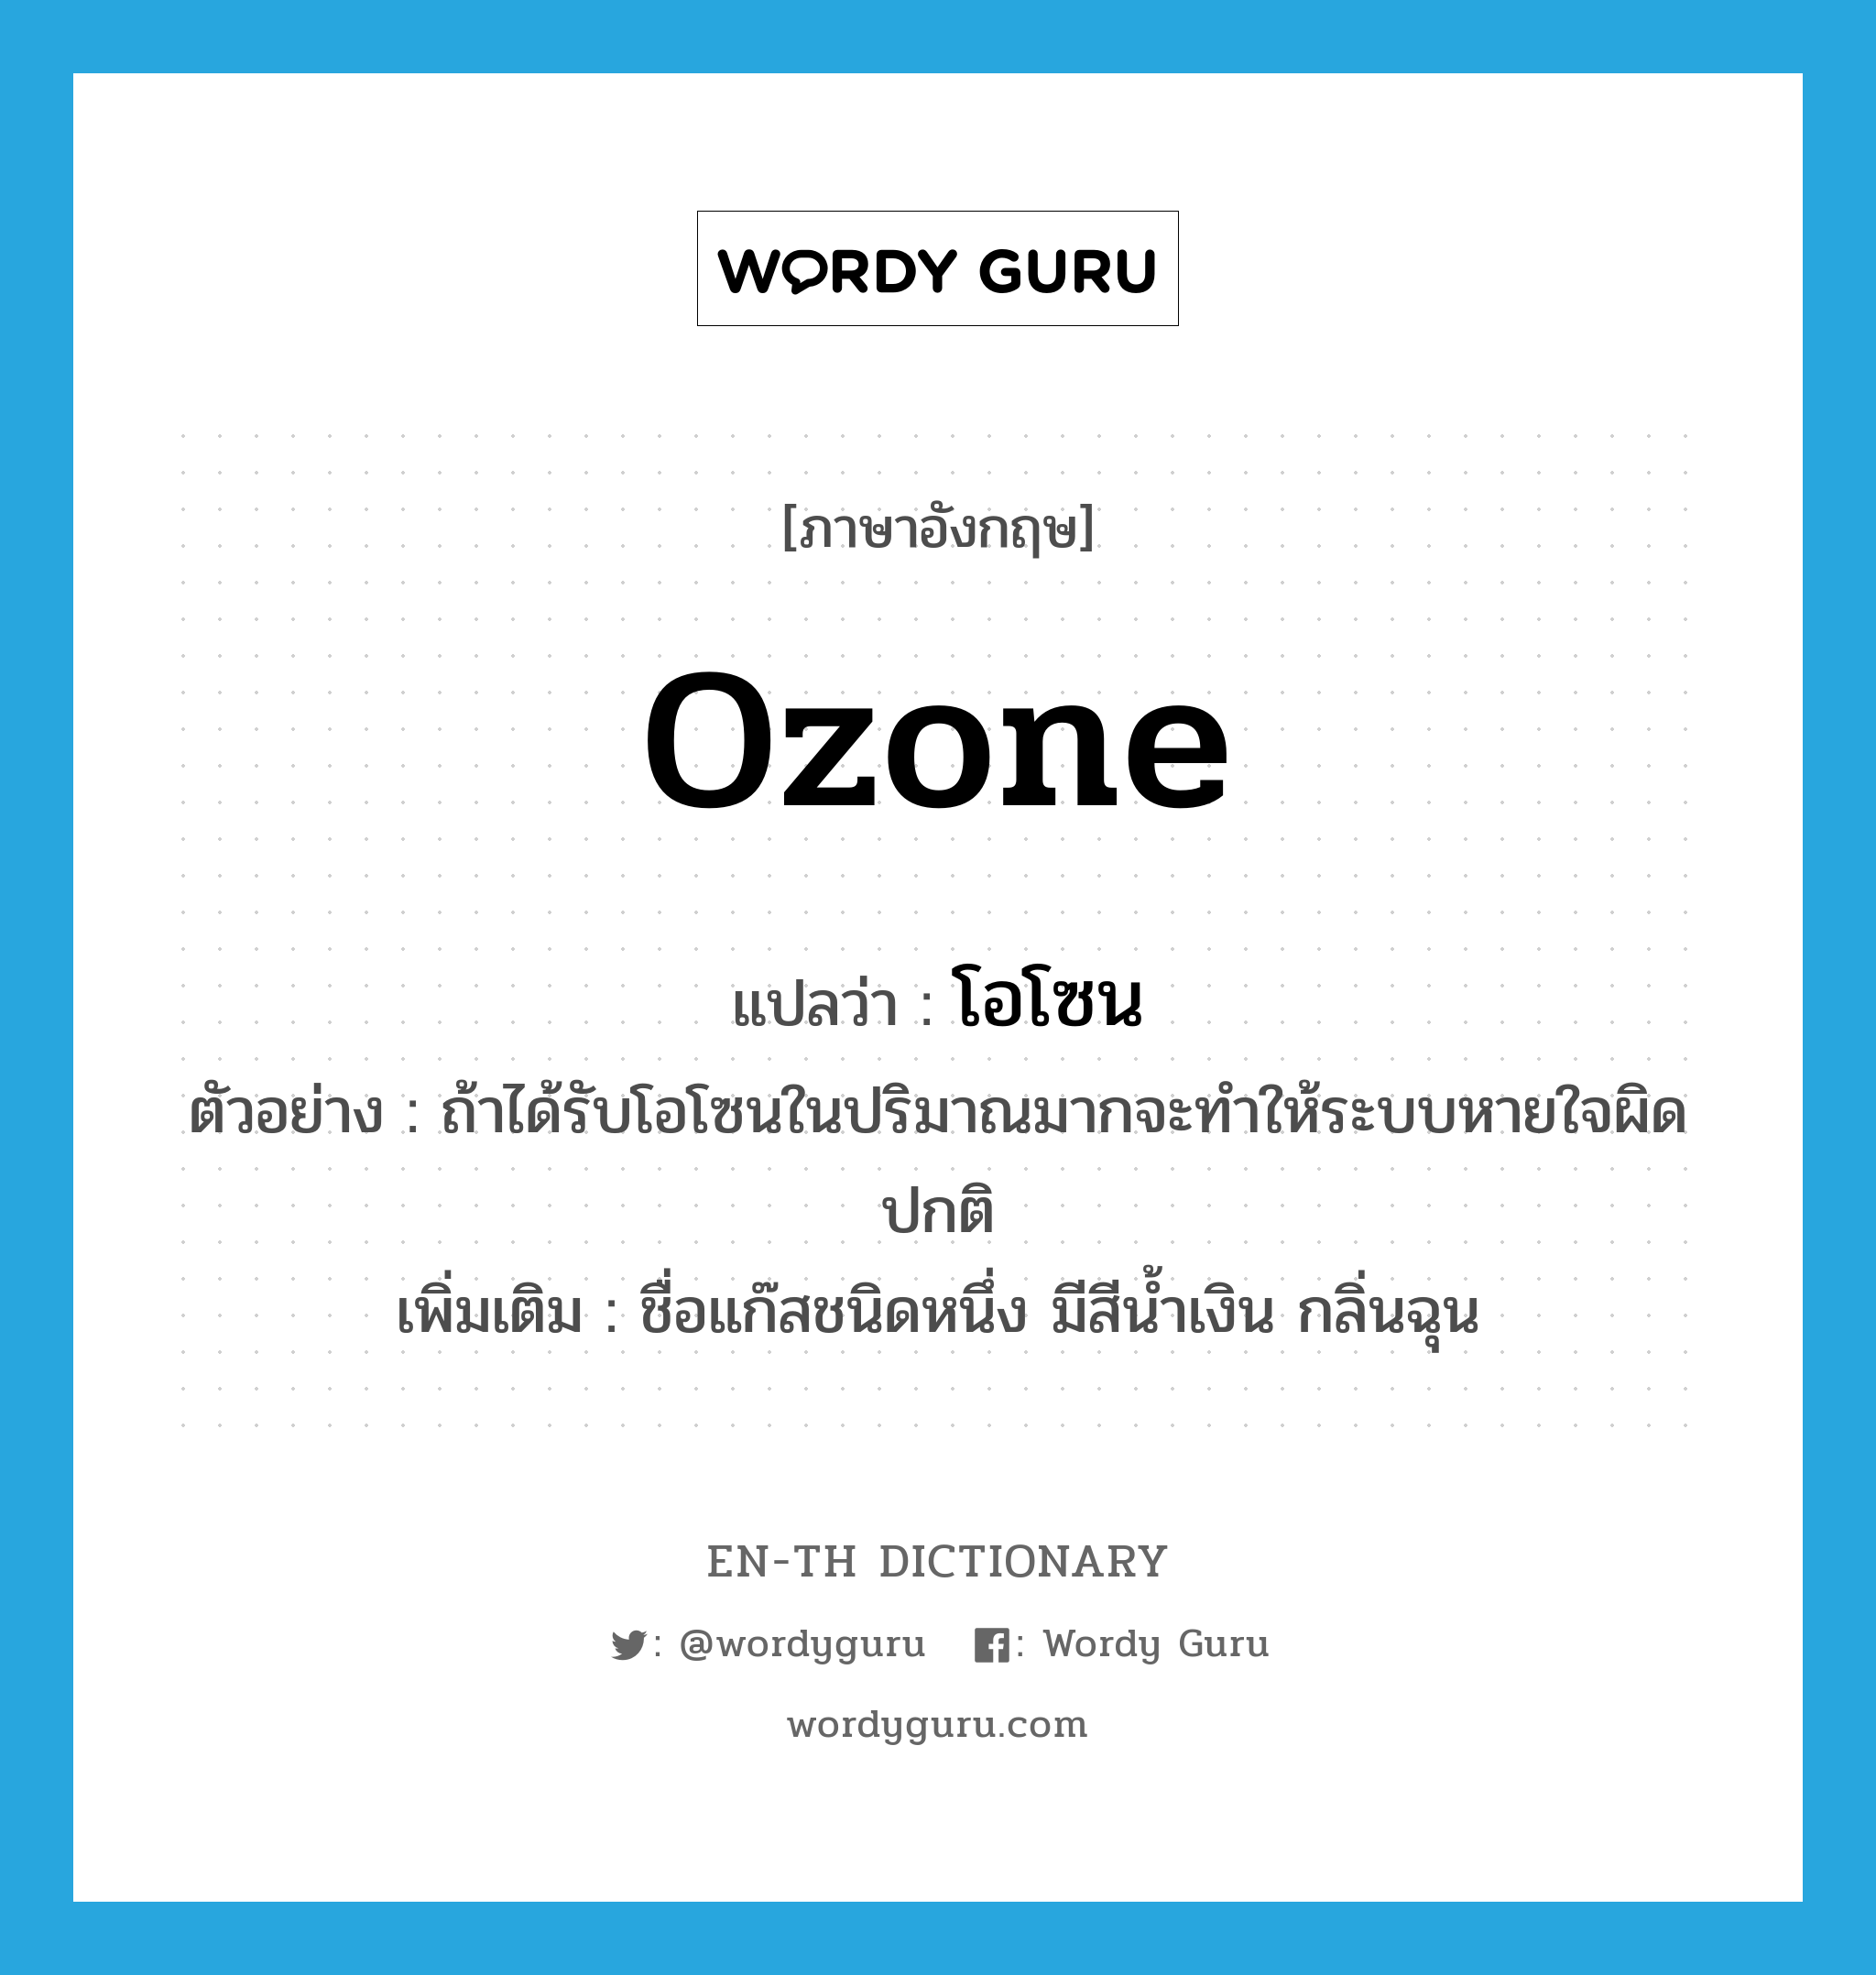 ozone แปลว่า?, คำศัพท์ภาษาอังกฤษ ozone แปลว่า โอโซน ประเภท N ตัวอย่าง ถ้าได้รับโอโซนในปริมาณมากจะทำให้ระบบหายใจผิดปกติ เพิ่มเติม ชื่อแก๊สชนิดหนึ่ง มีสีน้ำเงิน กลิ่นฉุน หมวด N